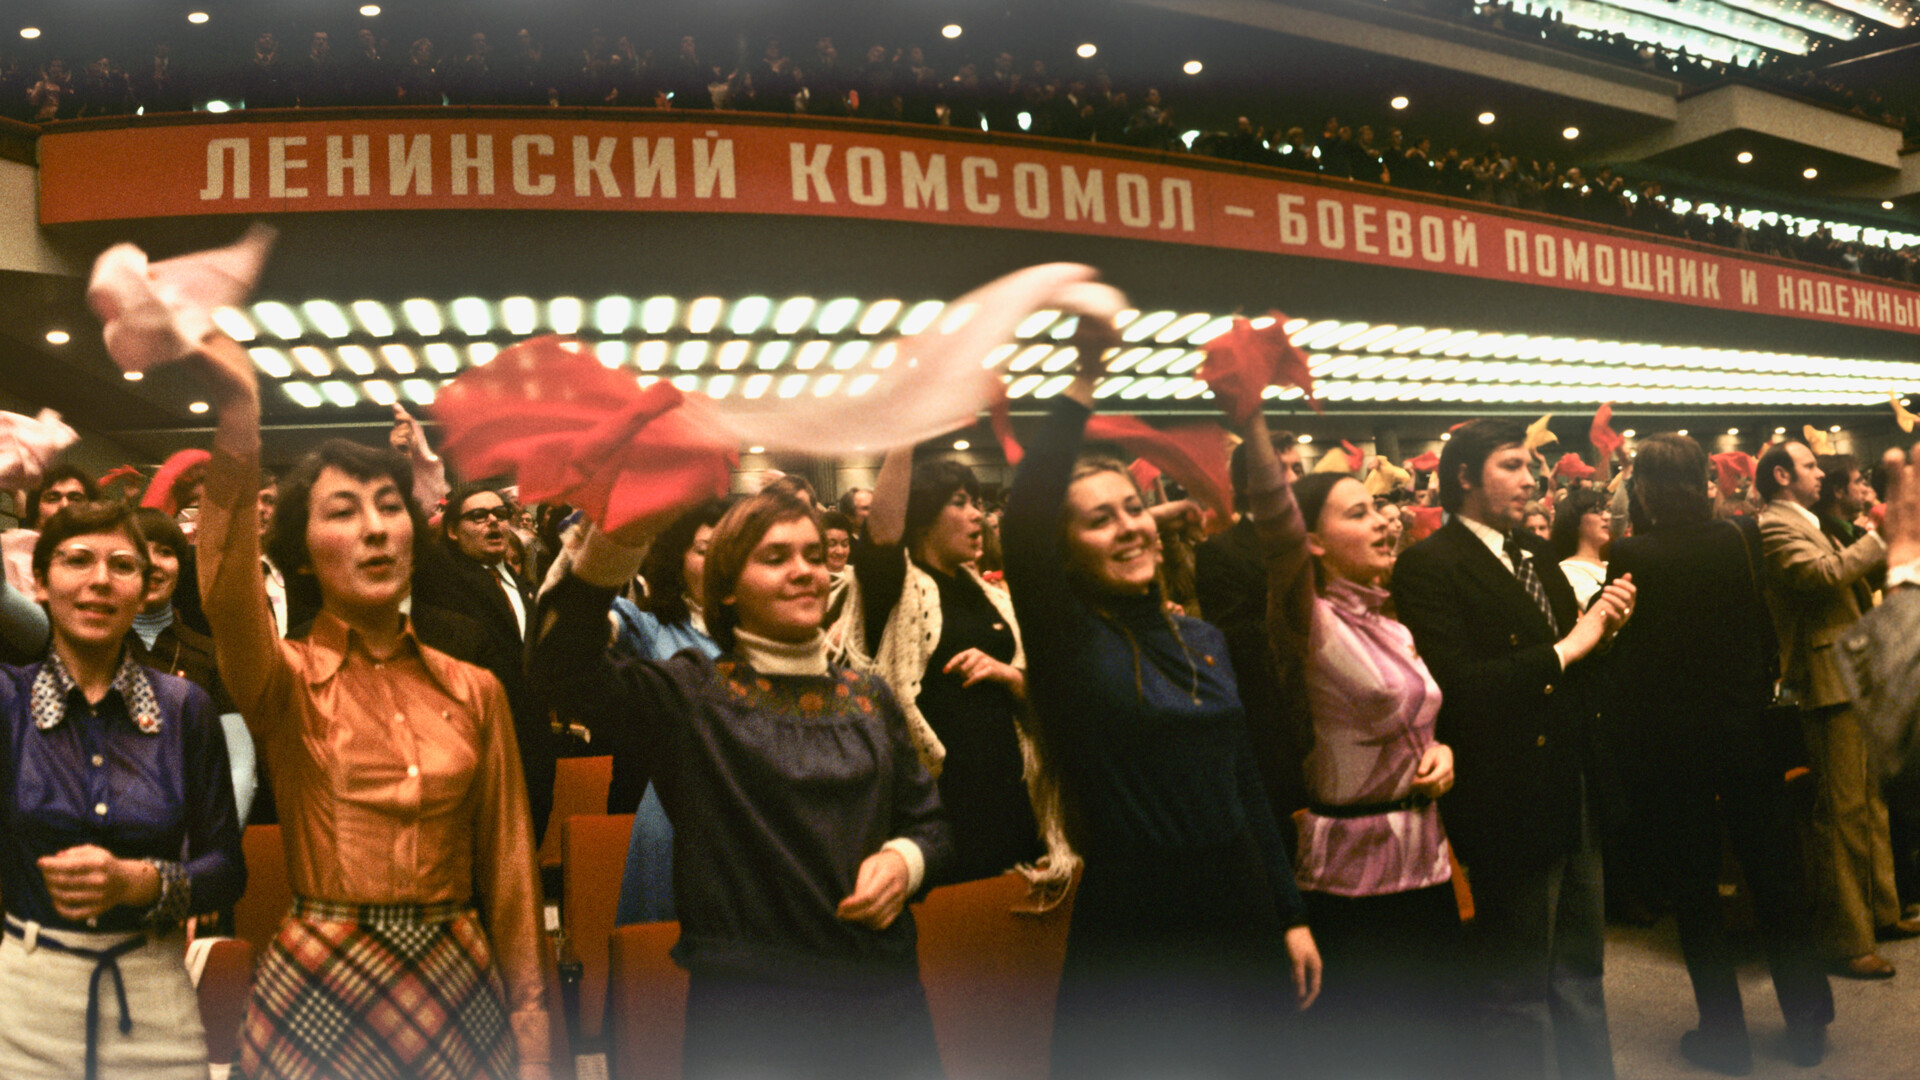 Komsomol meeting, 1976.